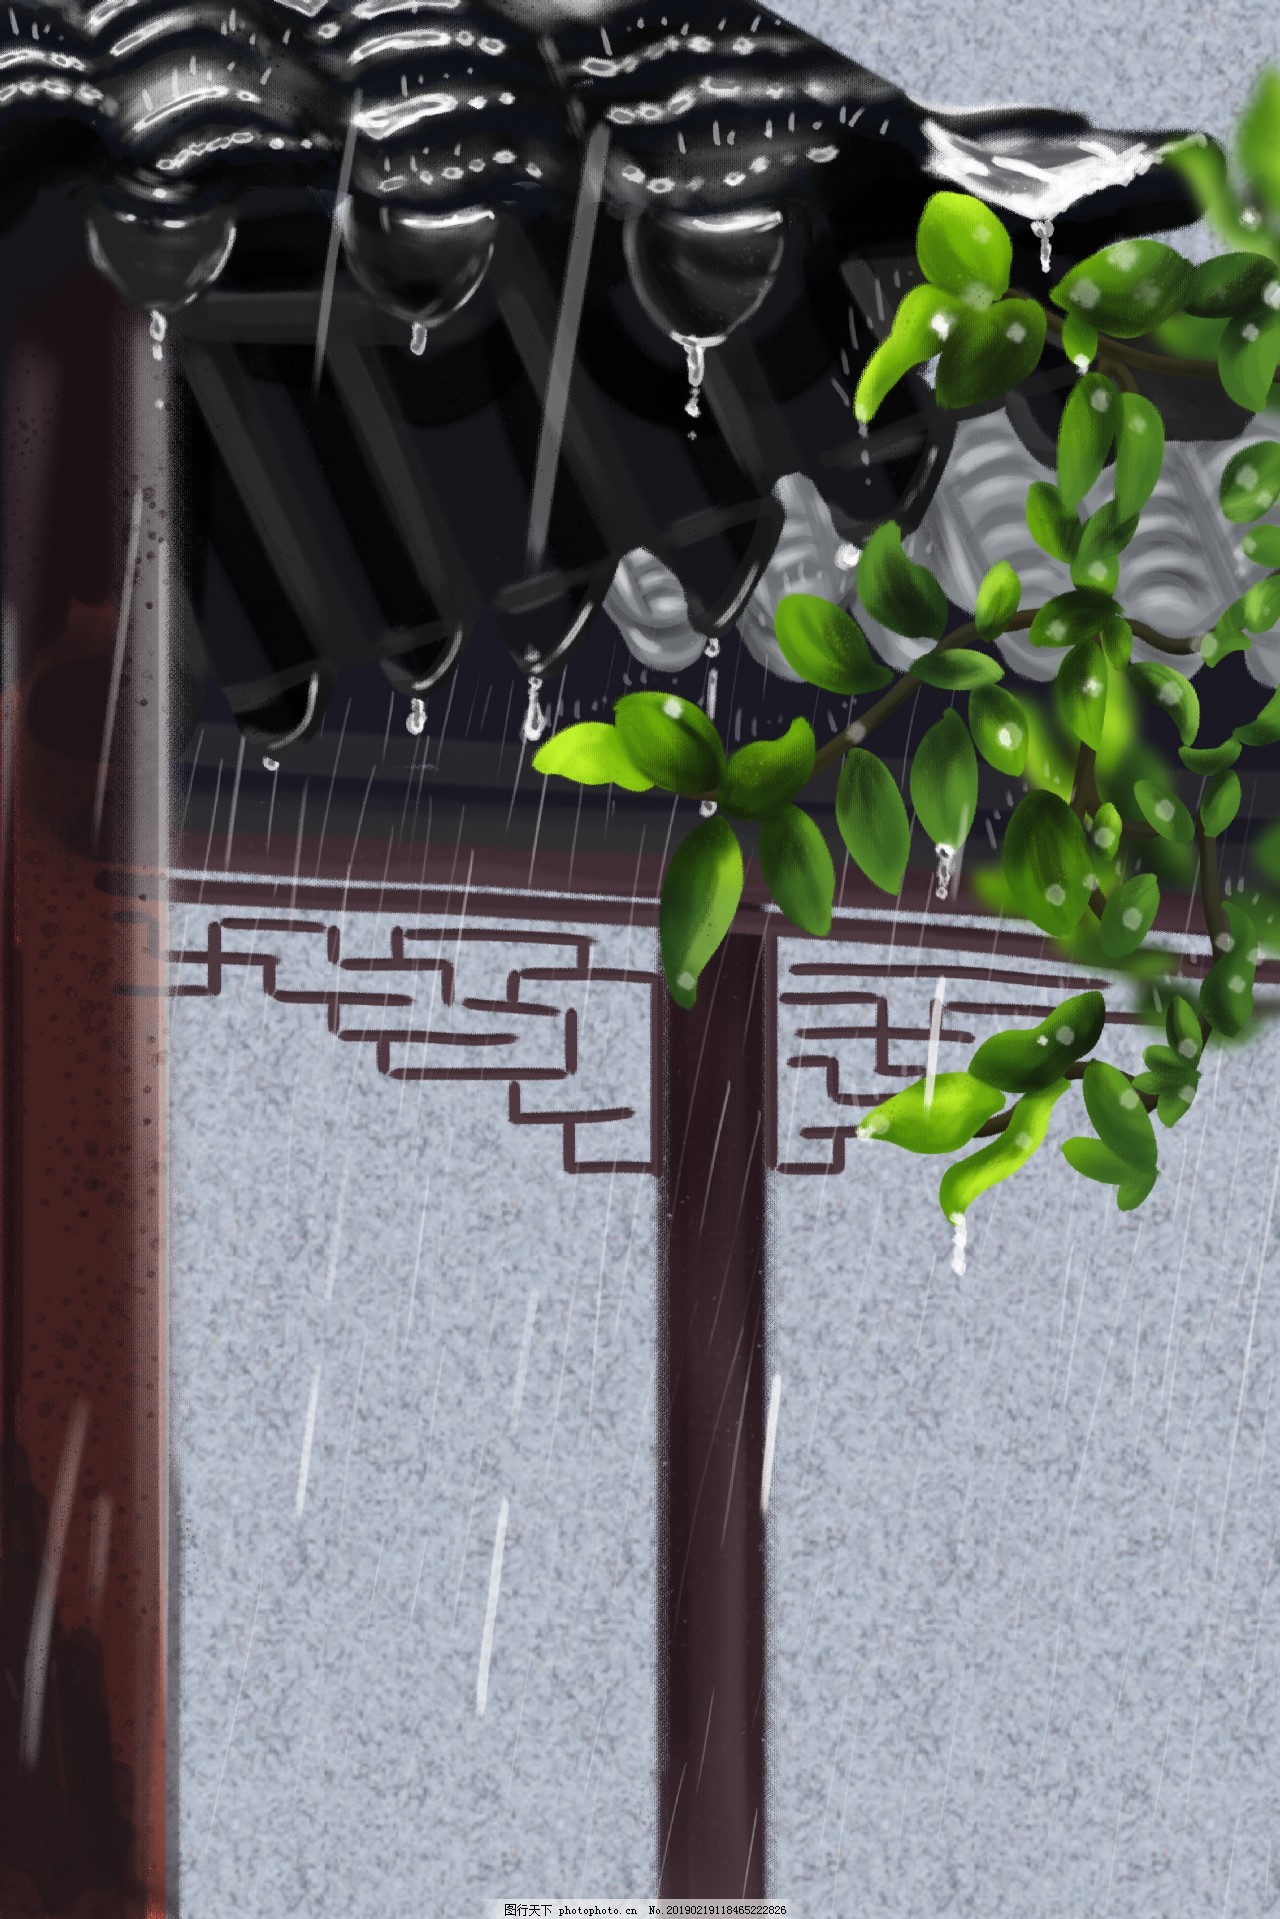 下雨天的車窗圖片素材-JPG圖片尺寸3466 × 2600px-高清圖案500456403-zh.lovepik.com